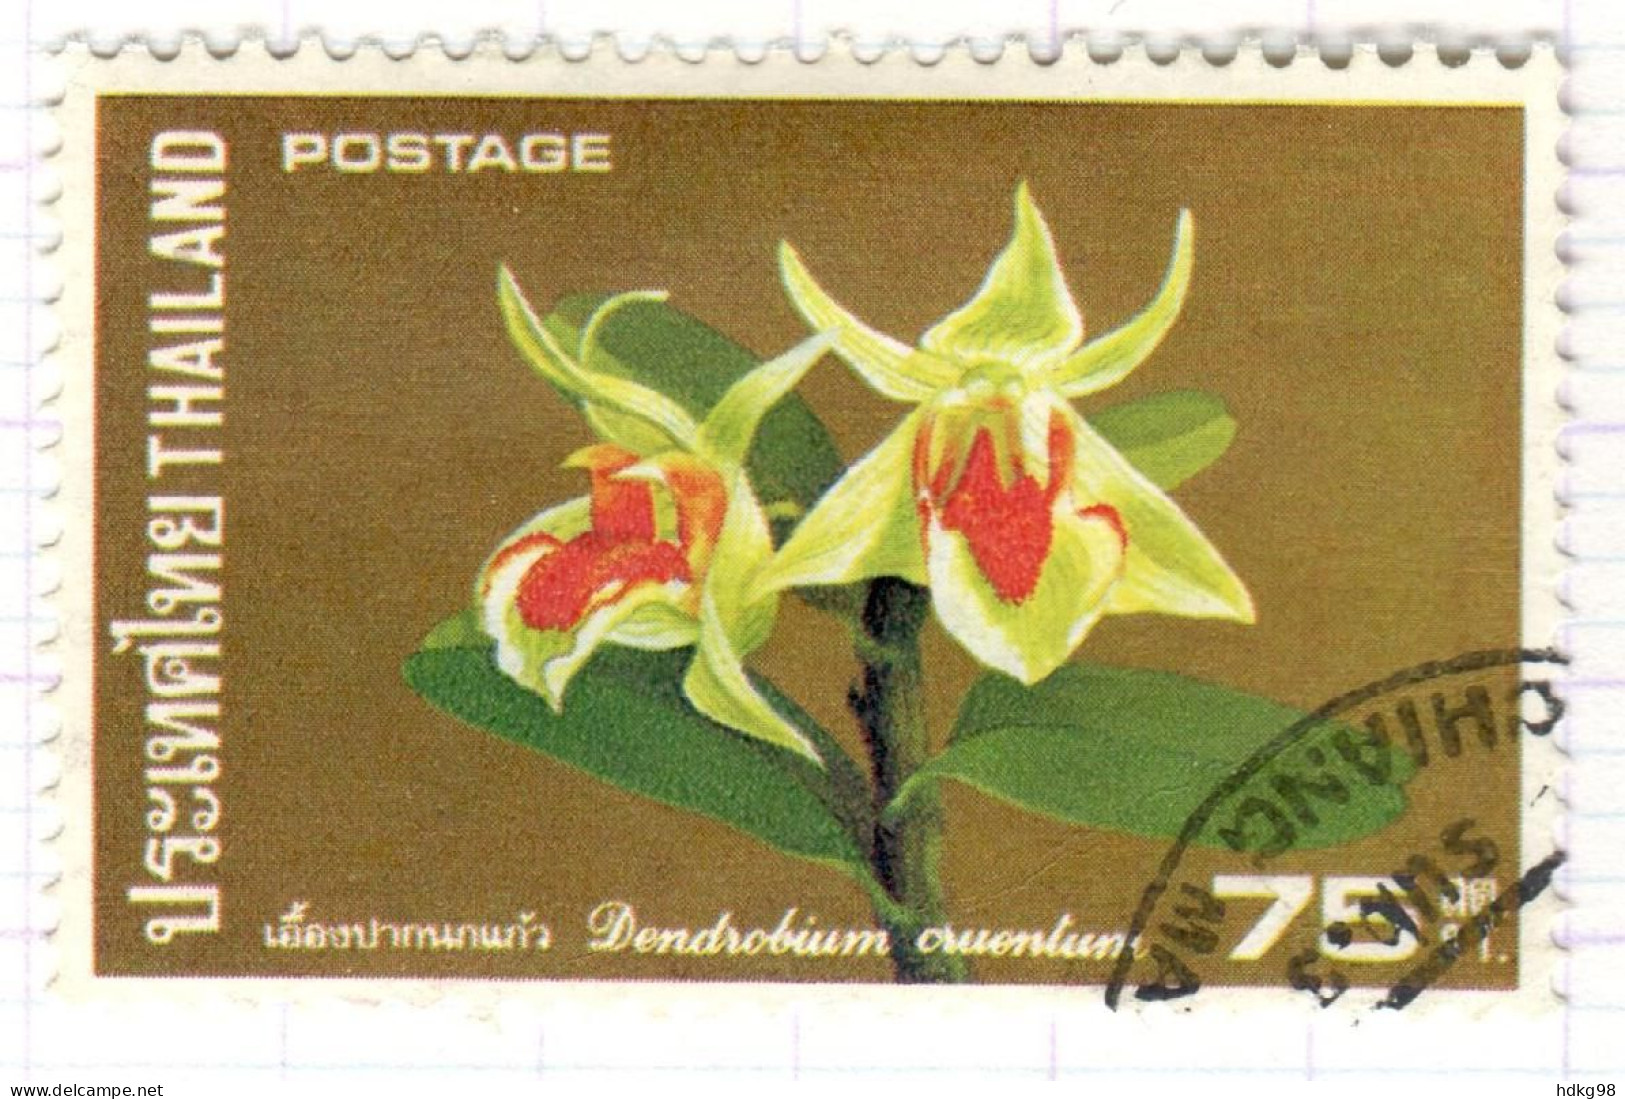 T+ Thailand 1975 Mi 764 Orchideen - Thaïlande